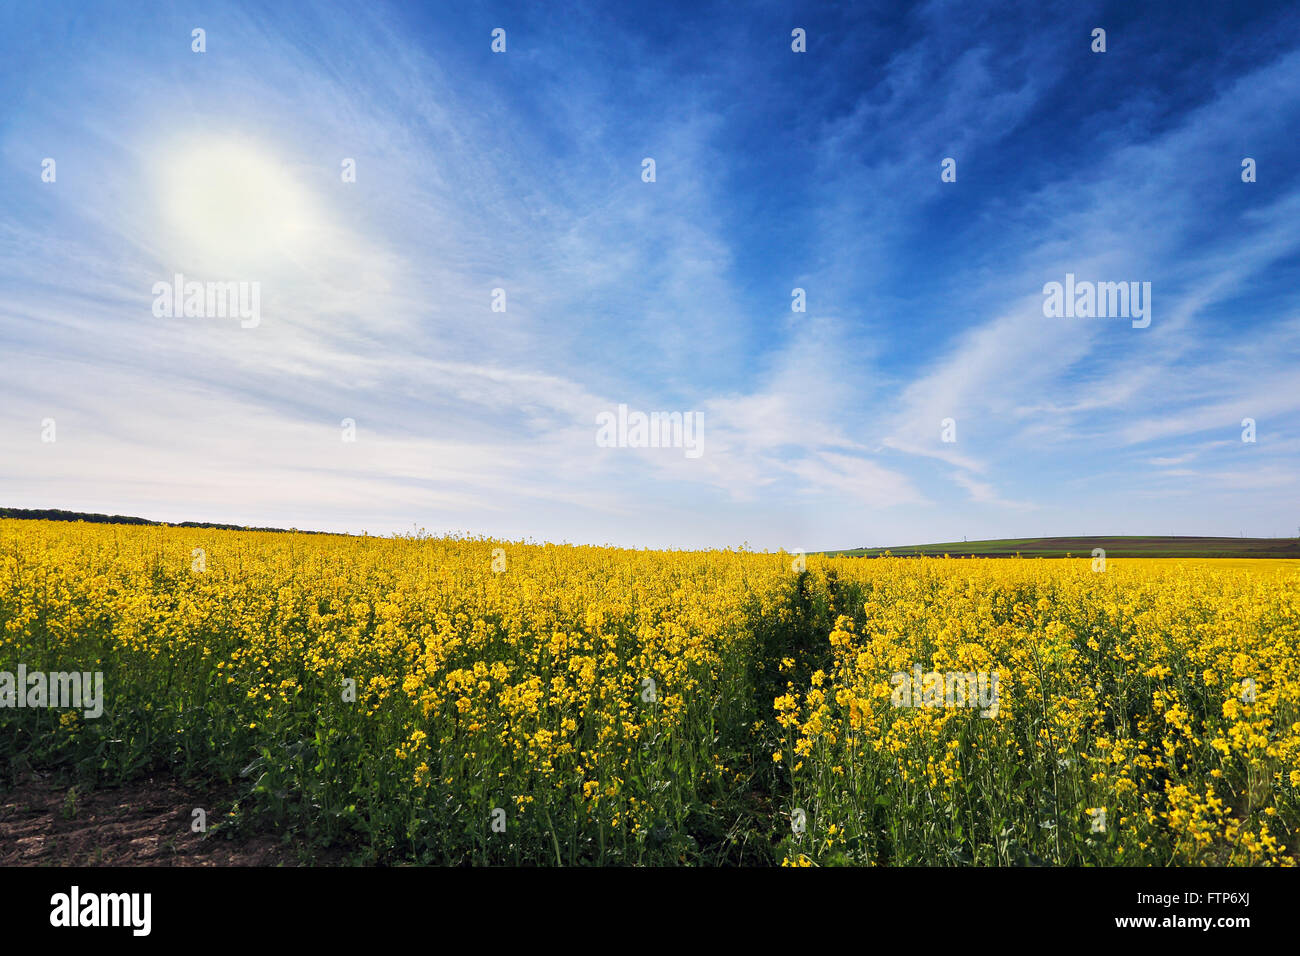 Les champs de colza de printemps. Fleurs jaunes en fleurs Photo Stock -  Alamy